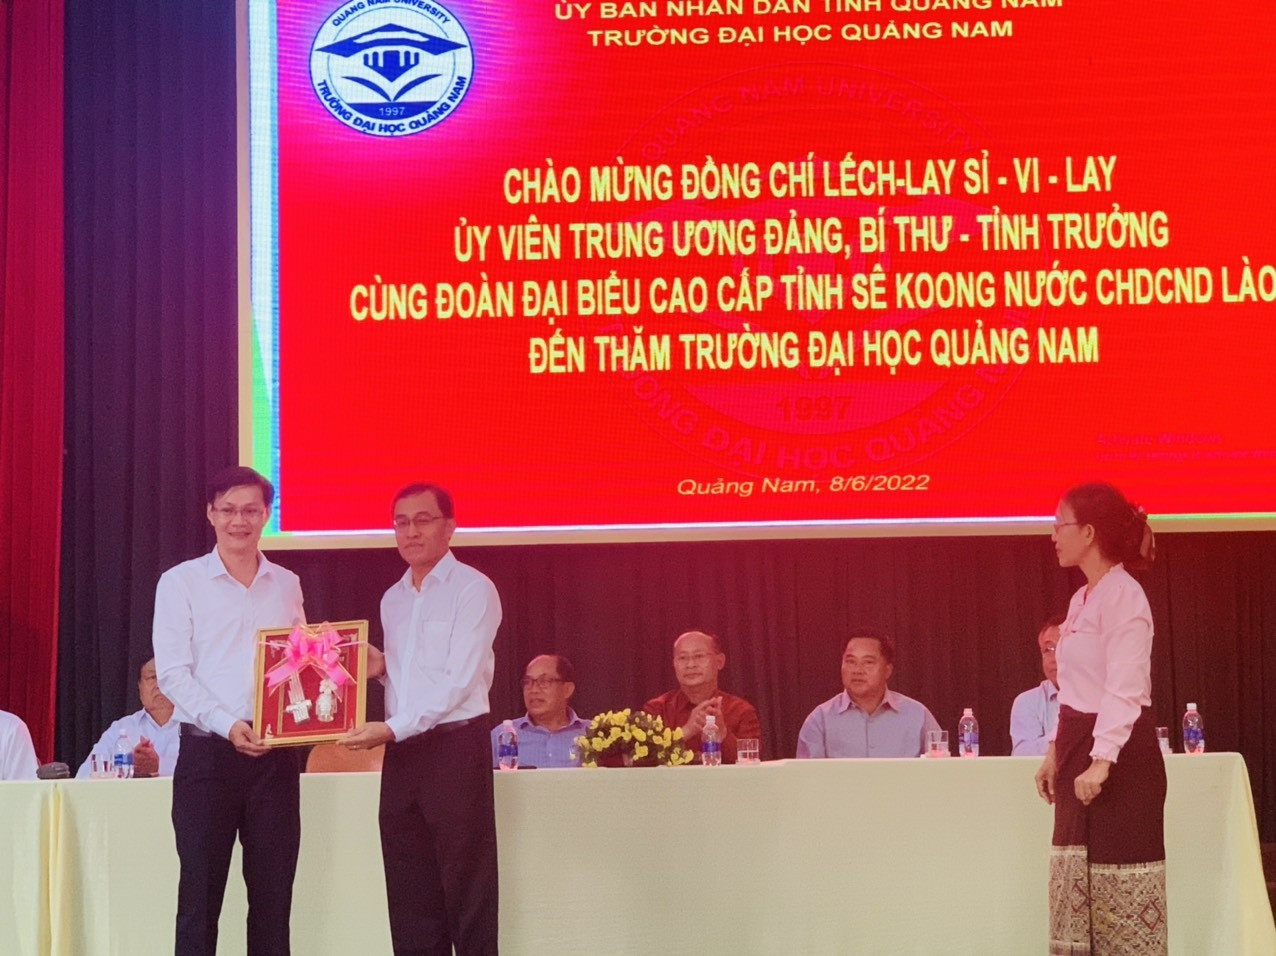 Đoàn đại biểu cấp cao tỉnh Sê Kông  (Lào) thăm Trường Đại học Quảng Nam.